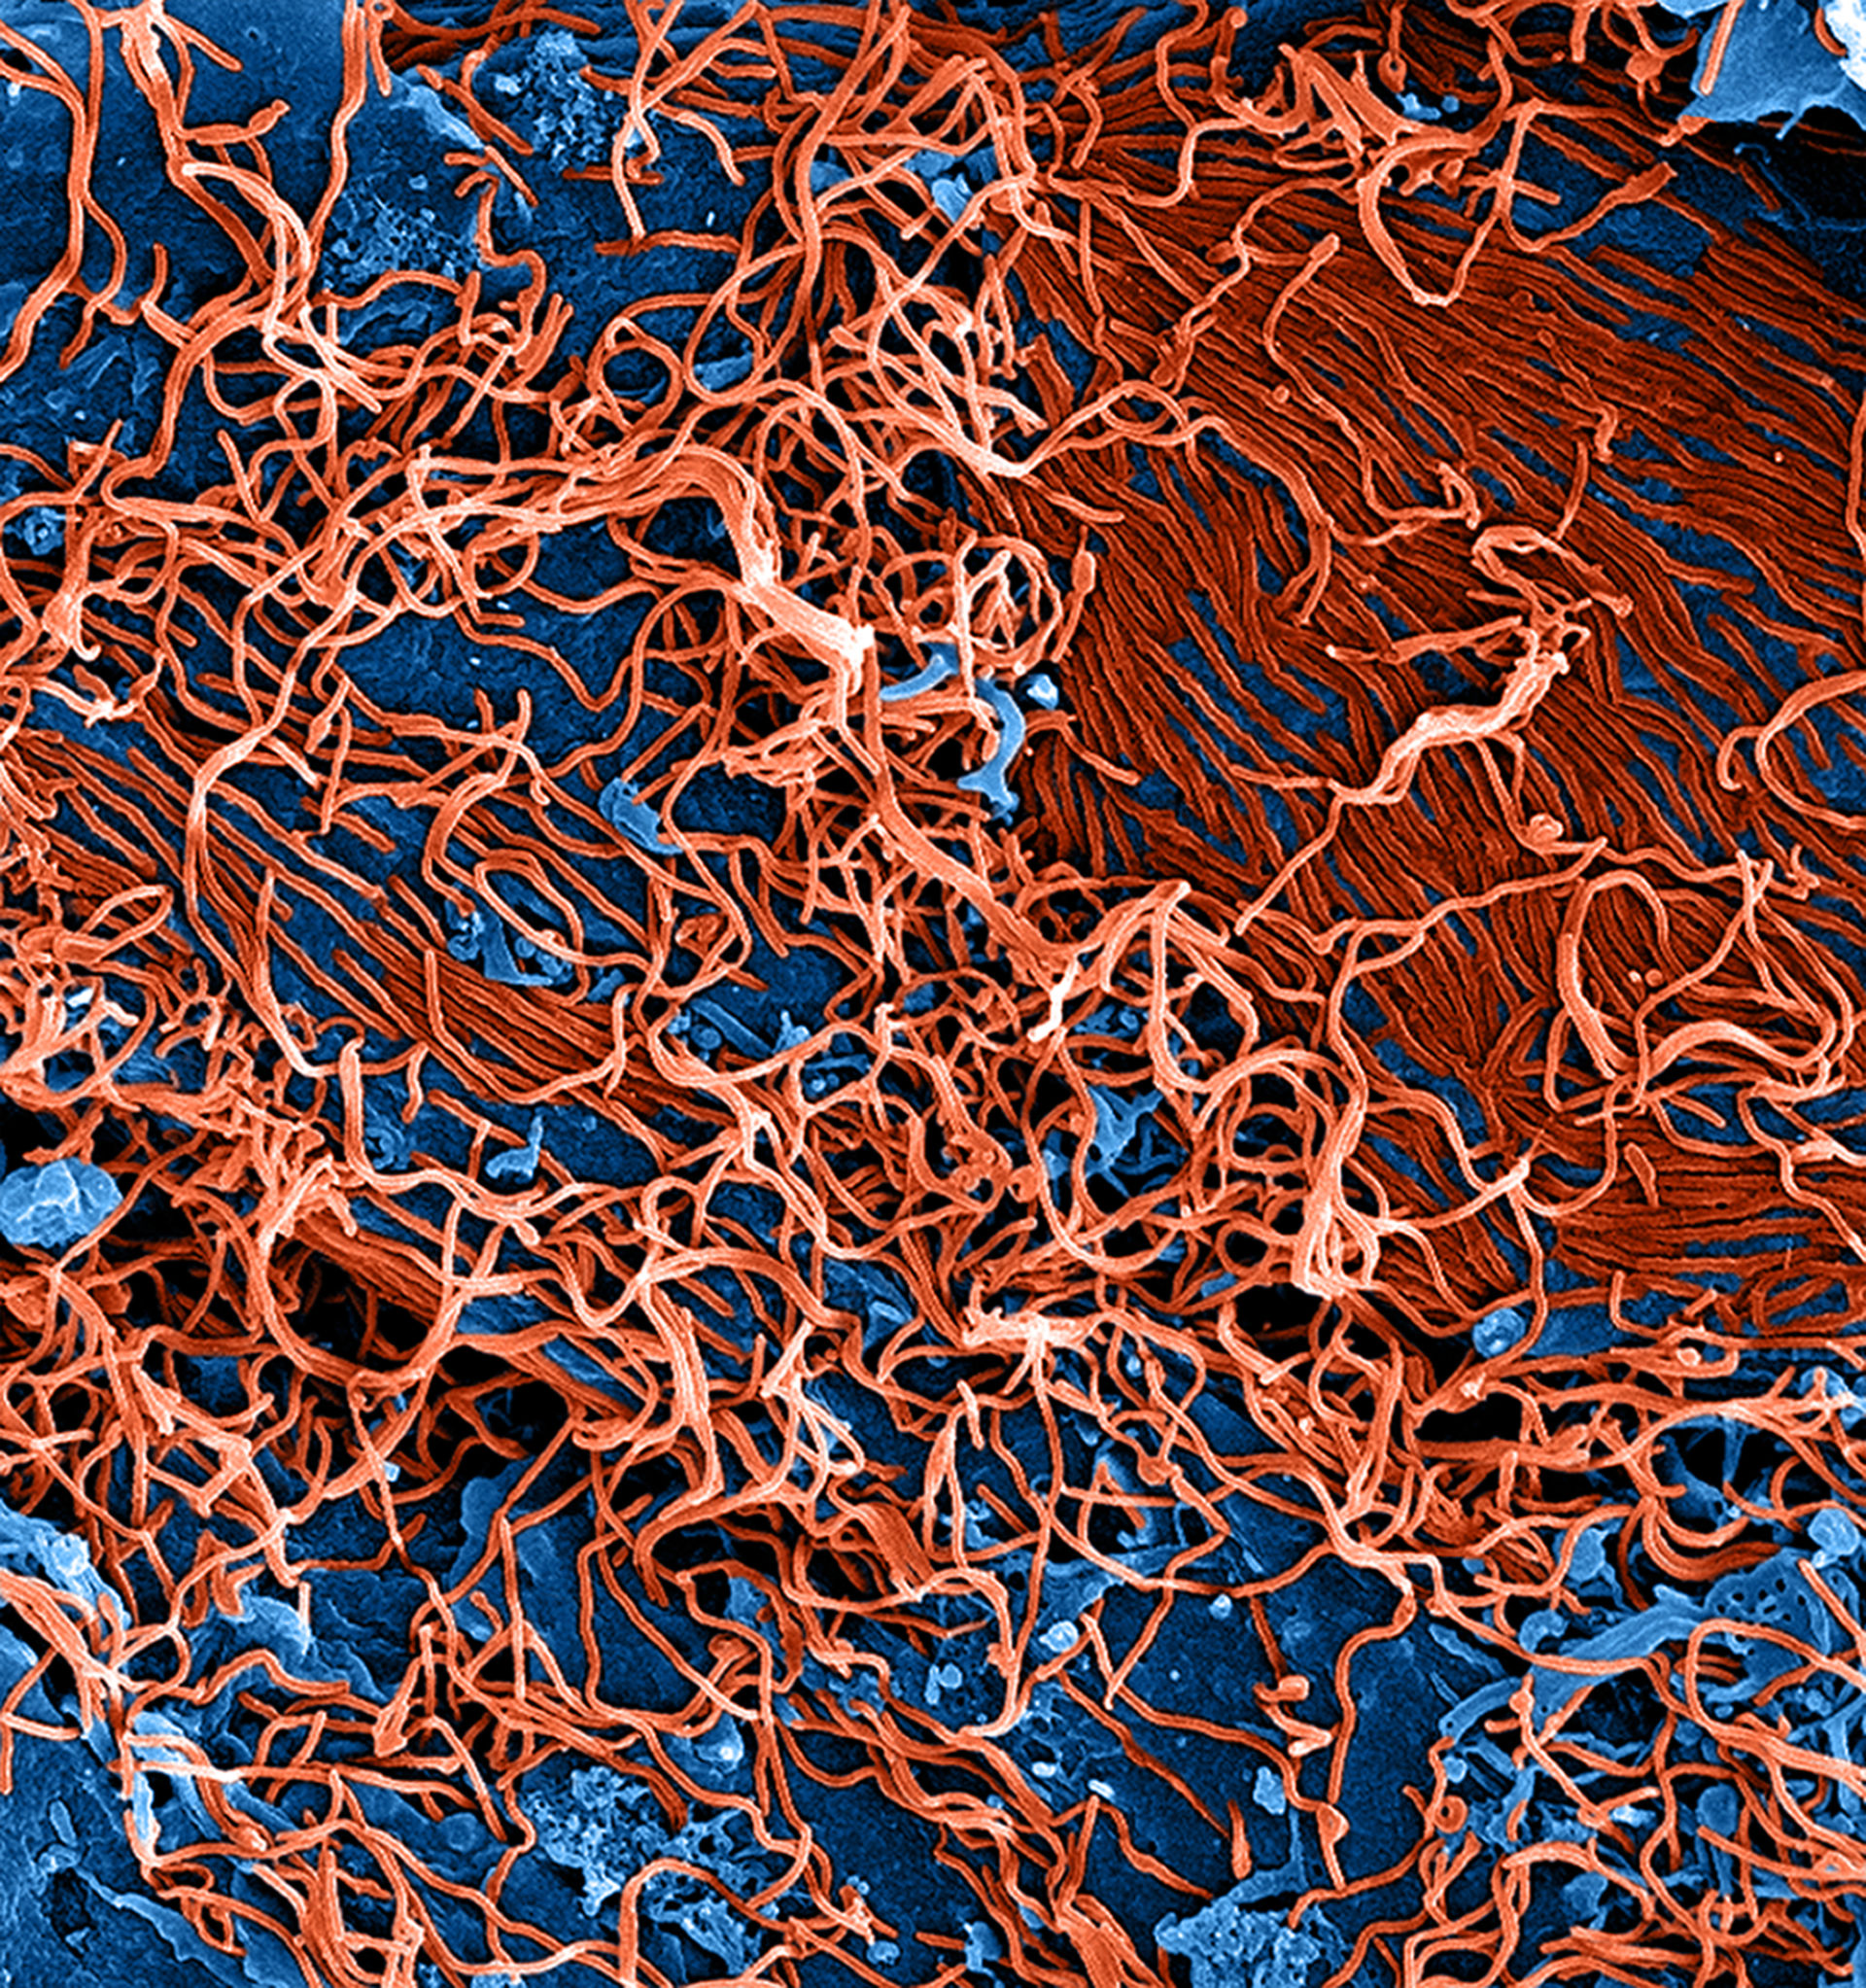 Partícula del virus de ebola